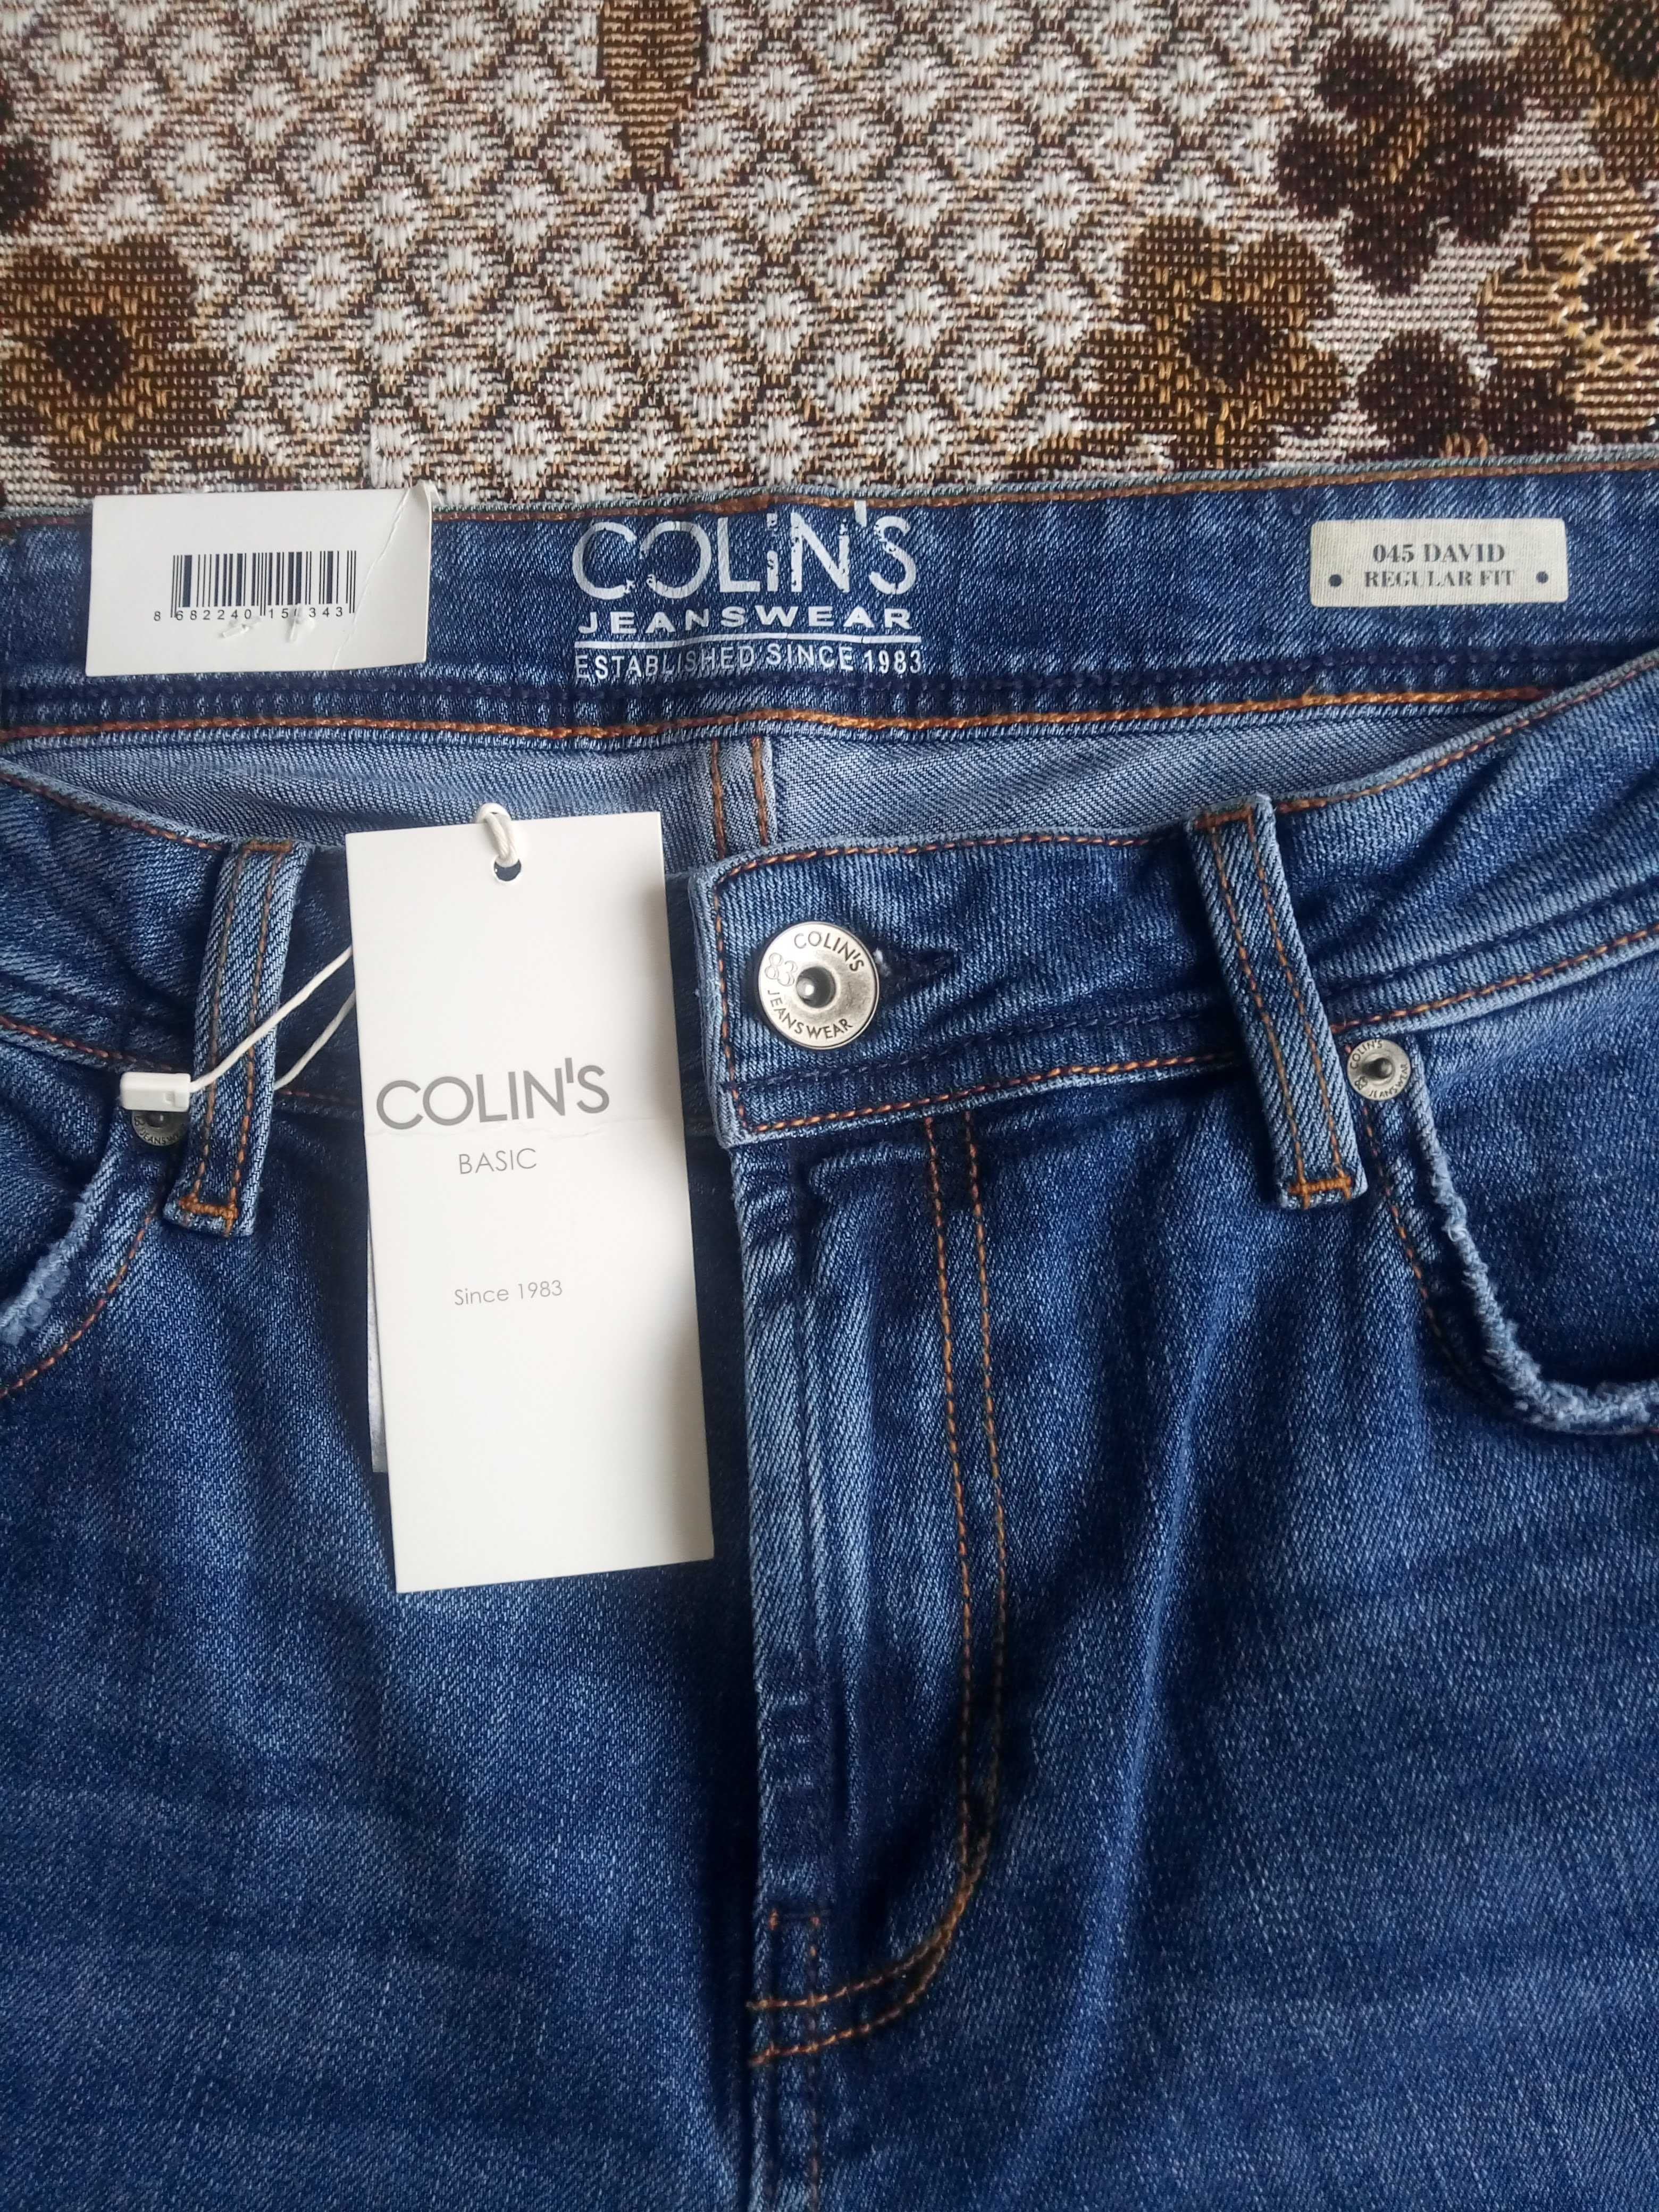 Продам нові джинси Colin's модель 045 david розмір W31 L32